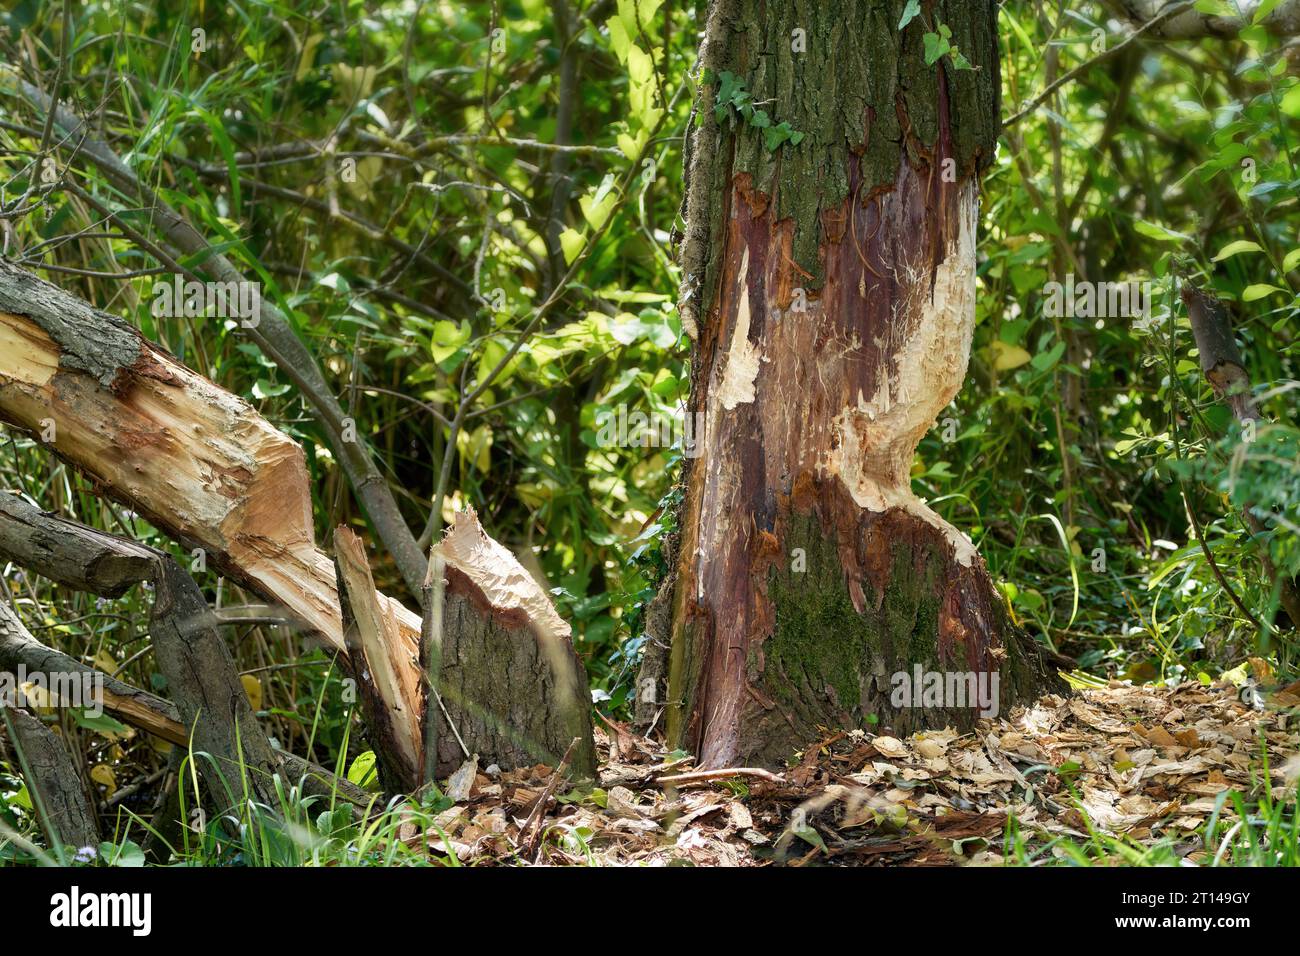 Biberbiss auf Bäumen - Nahaufnahme von Baumstämmen, die von Bibern genagt wurden Stockfoto